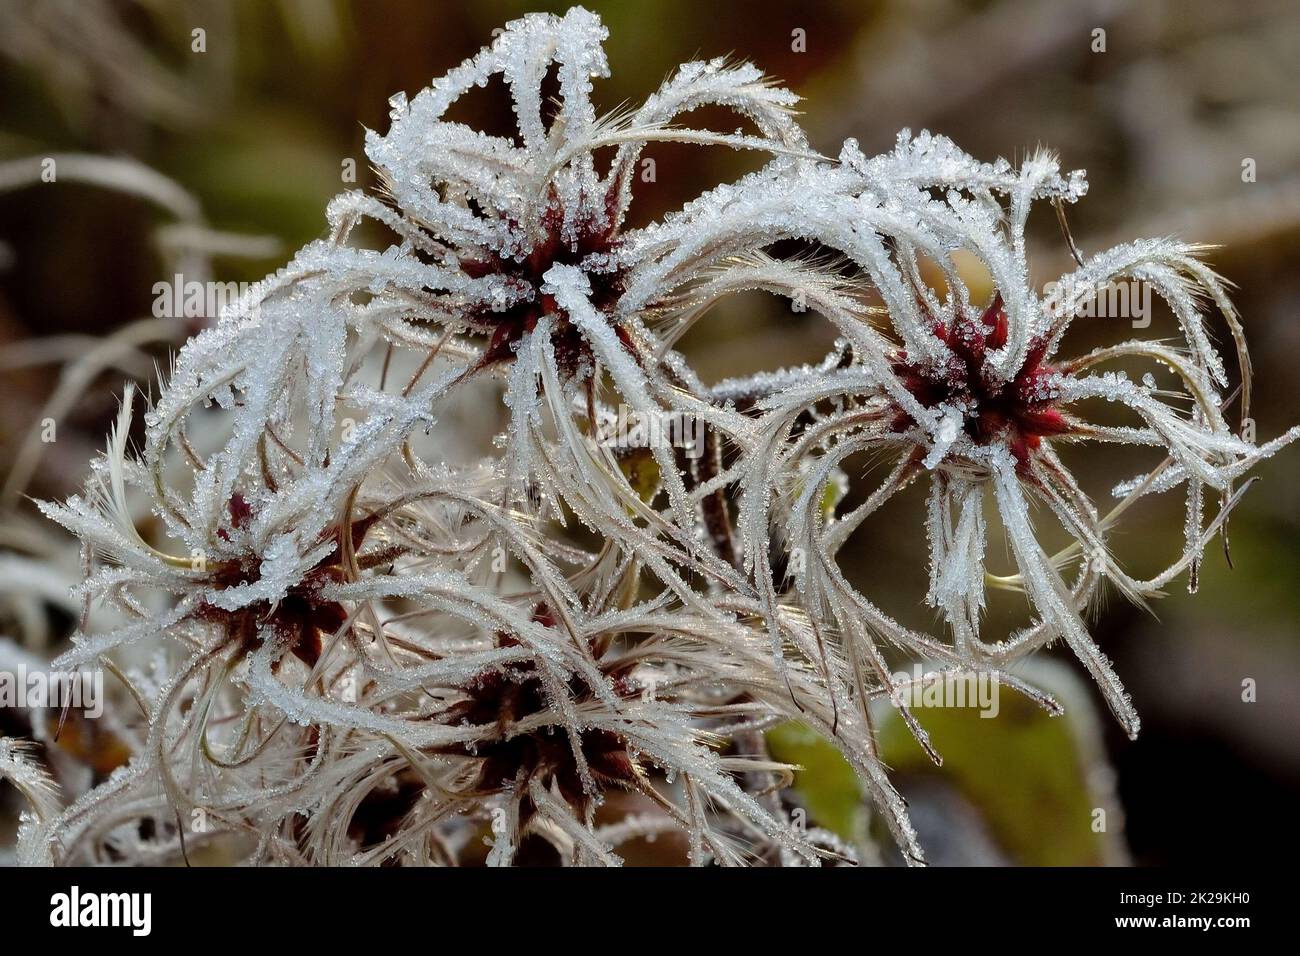 semi di fiori di clematis congelati dopo una notte fredda in inverno - sommersi da cristalli di ghiaccio Foto Stock